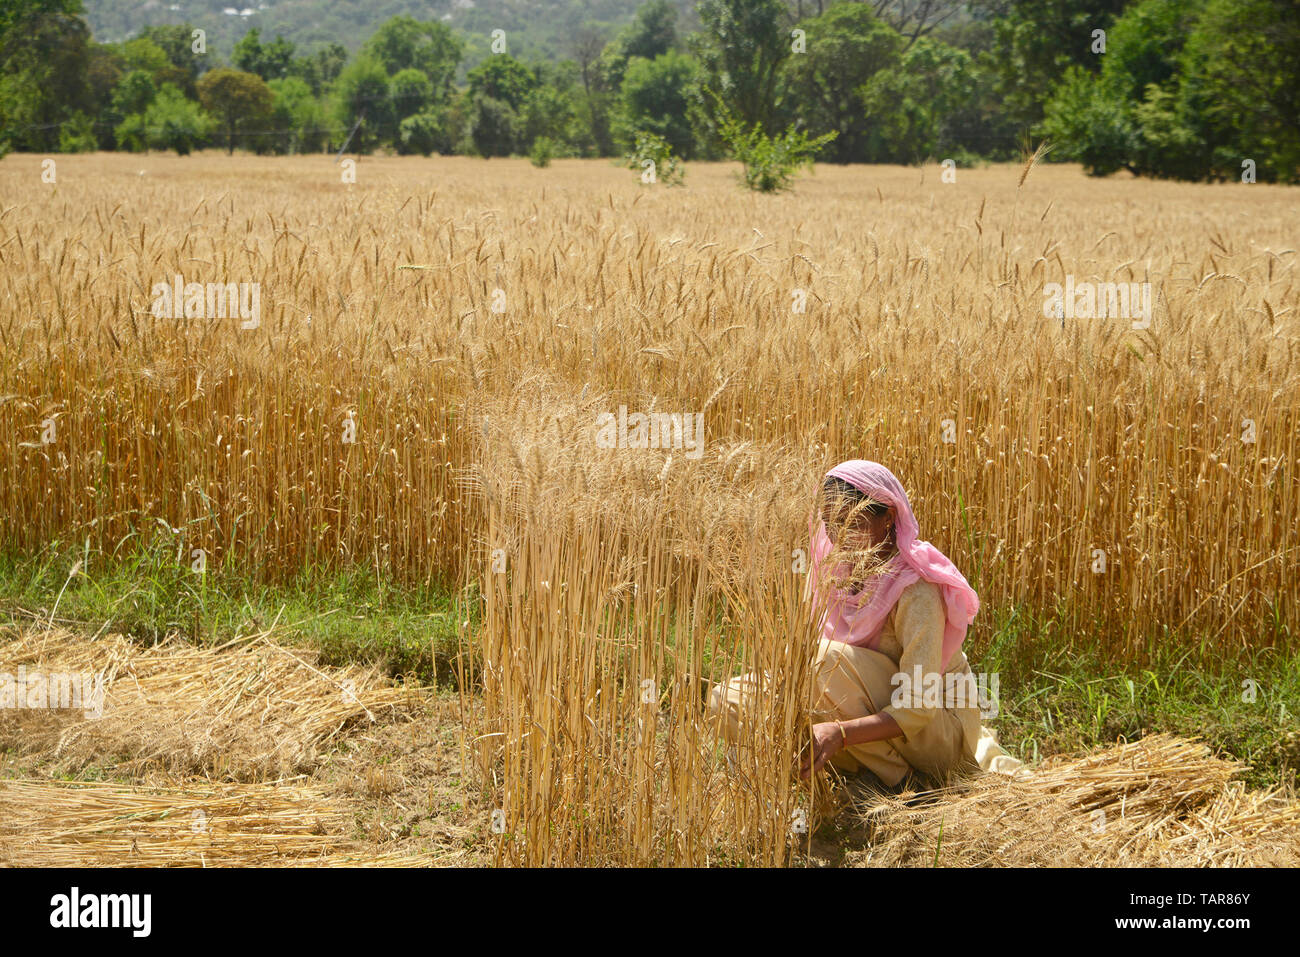 La récolte des cultures de blé agricultrice dans un champ de blé Banque D'Images